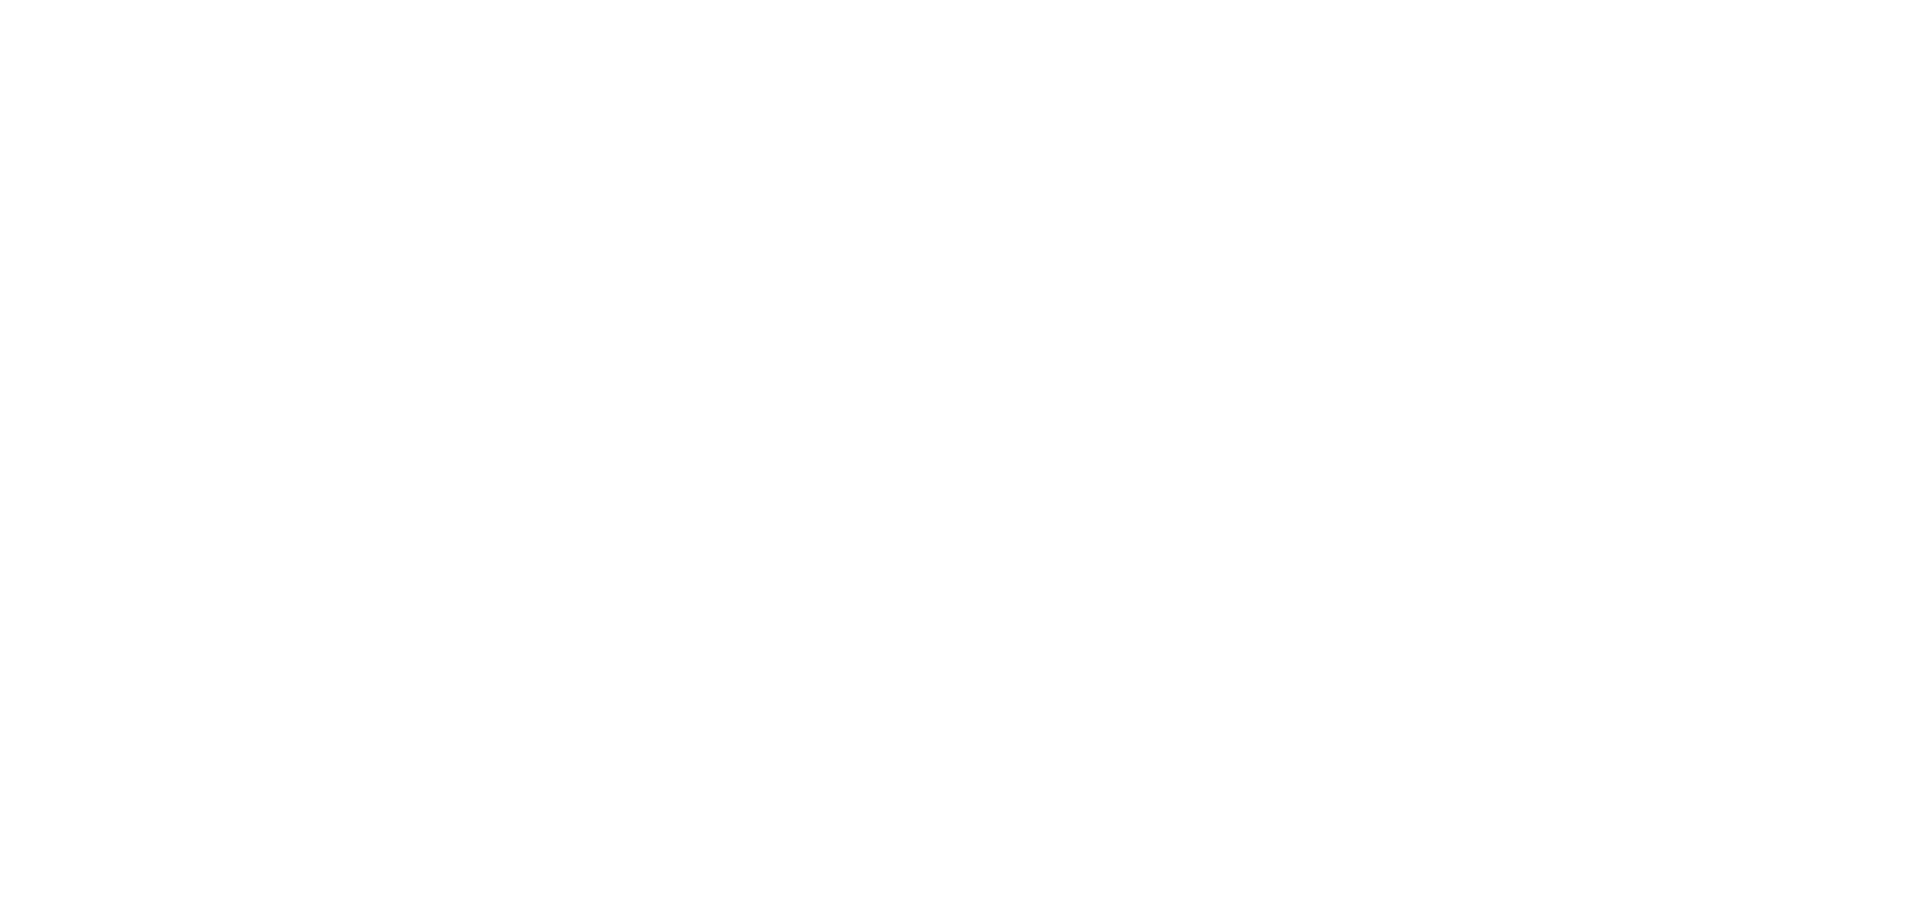 Orphan Care White v1